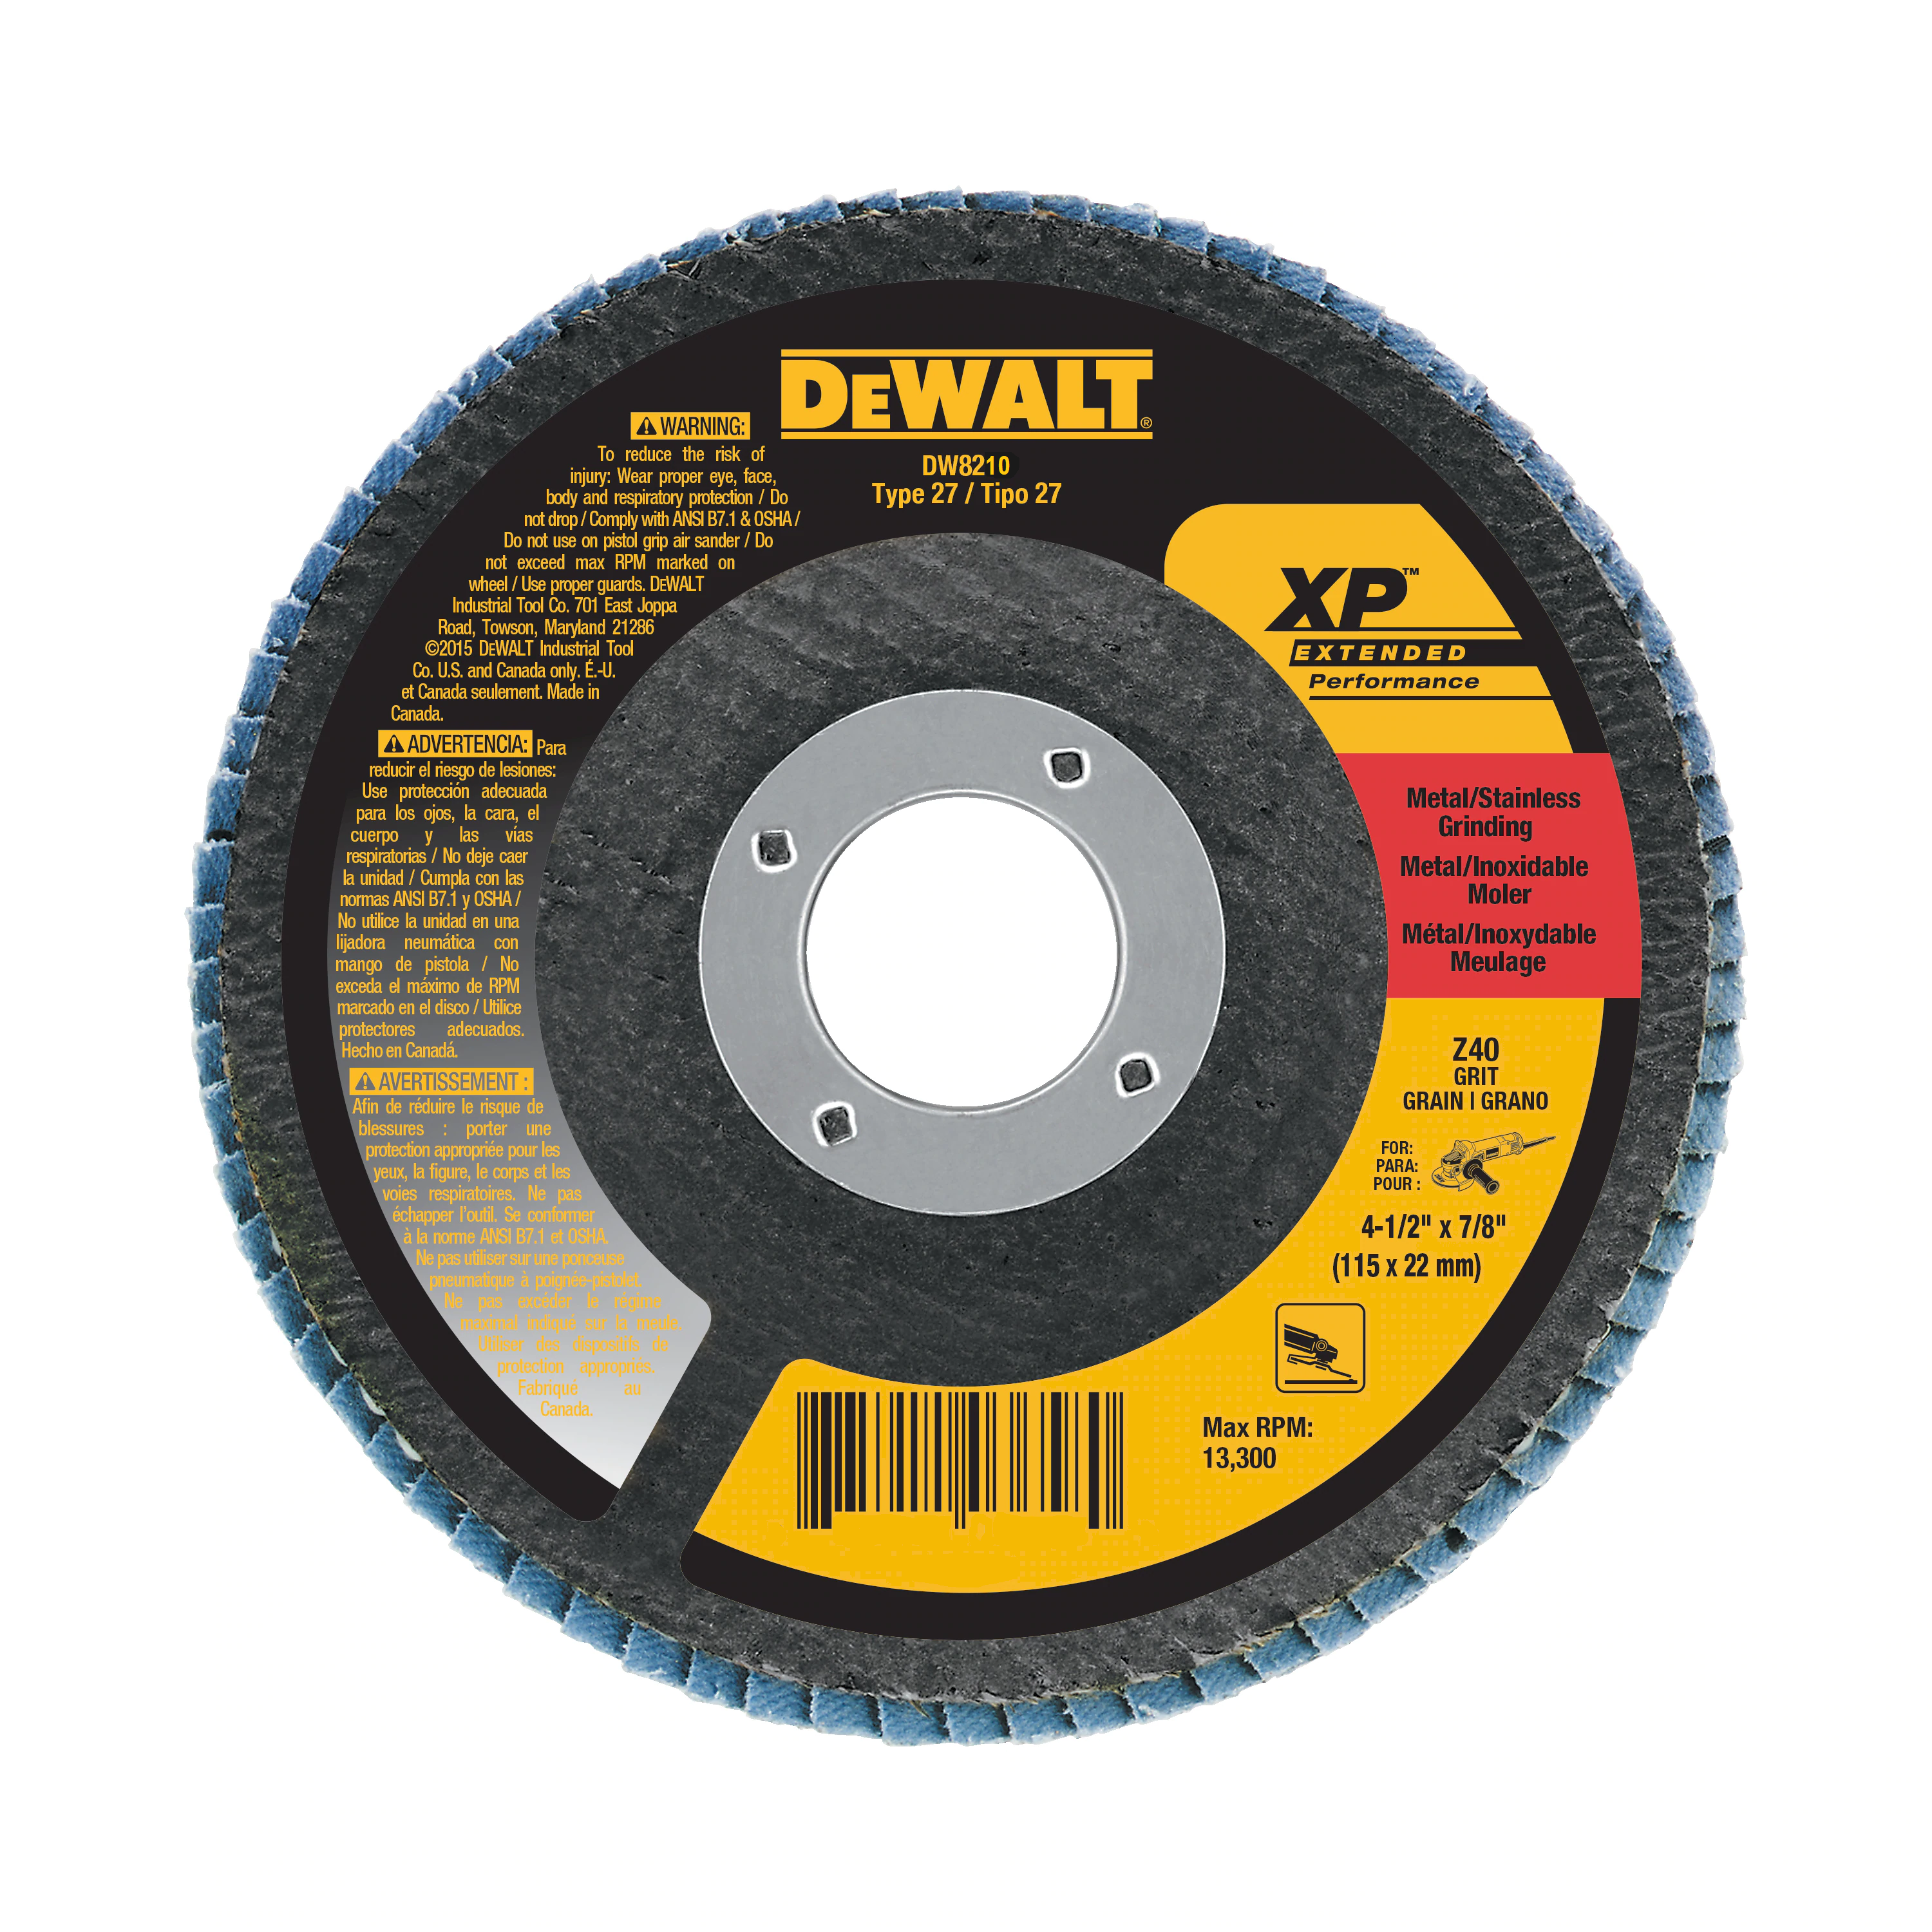 DEWALT DW8210  -  4-1/2x7/8" 40G Flap Disc